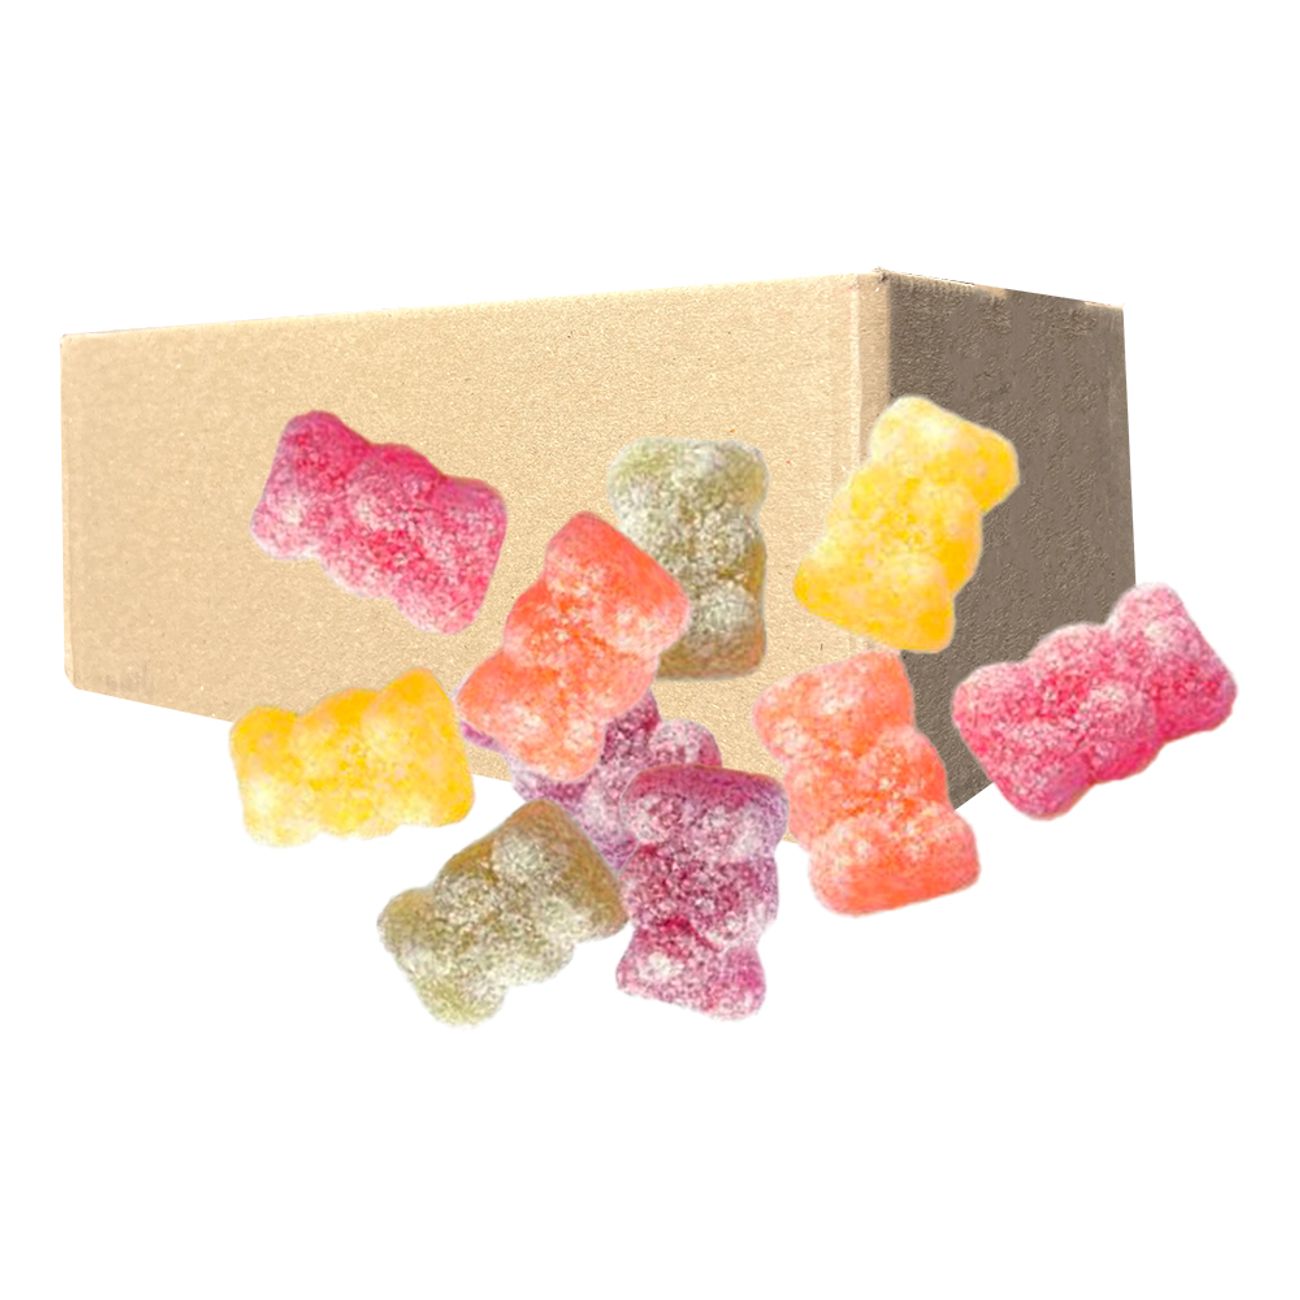 malaco-sour-teddy-bears-storpack-103016-1